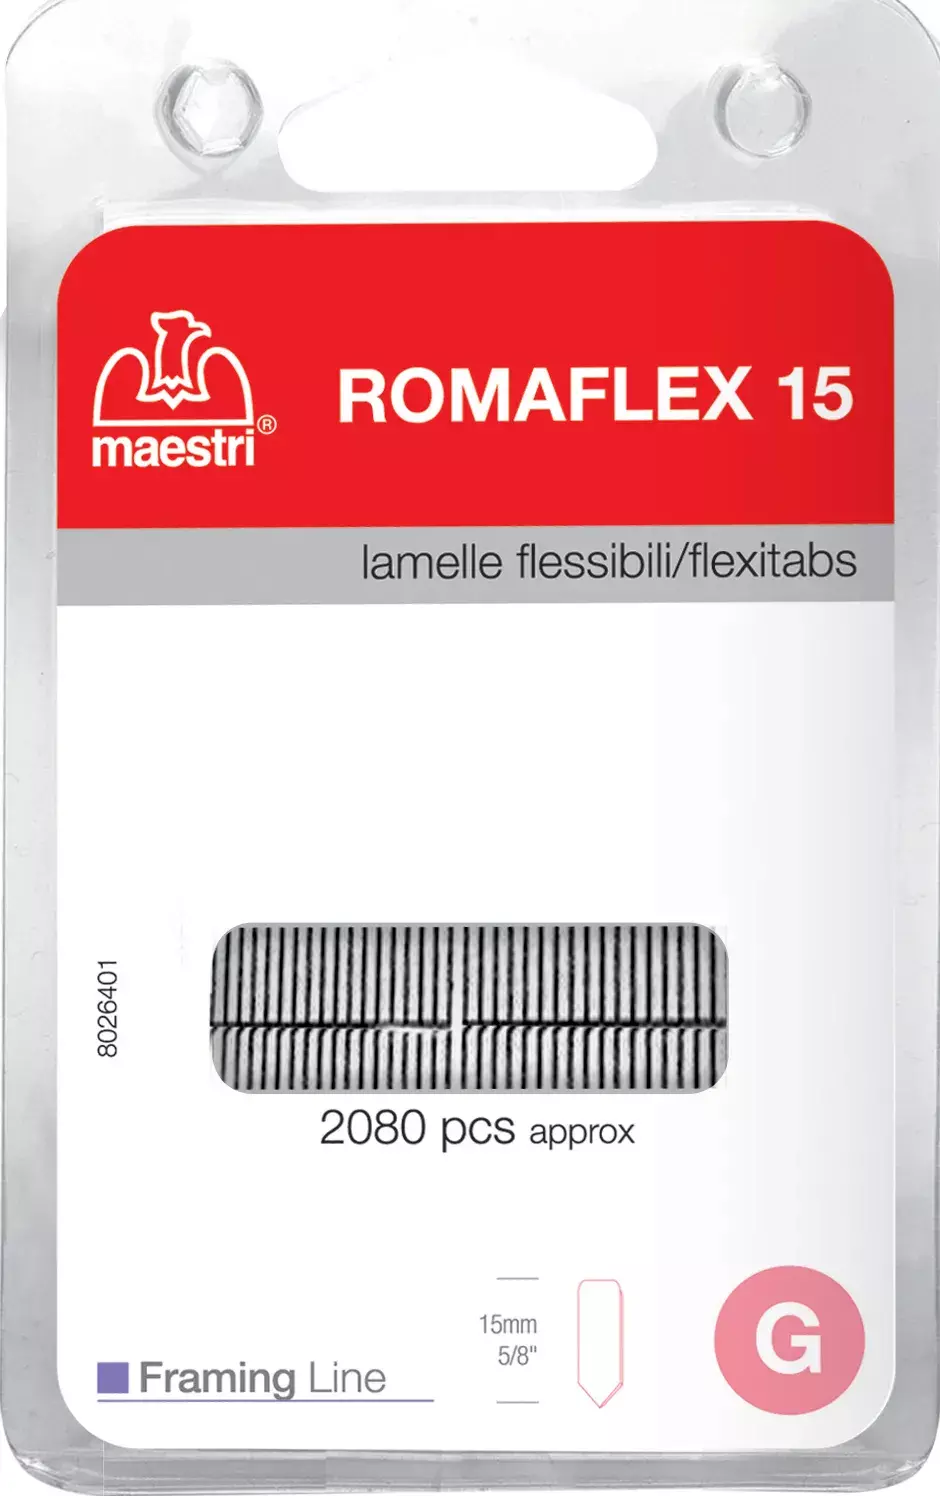 gbc Lamelle flessibili blister ROM1130901.